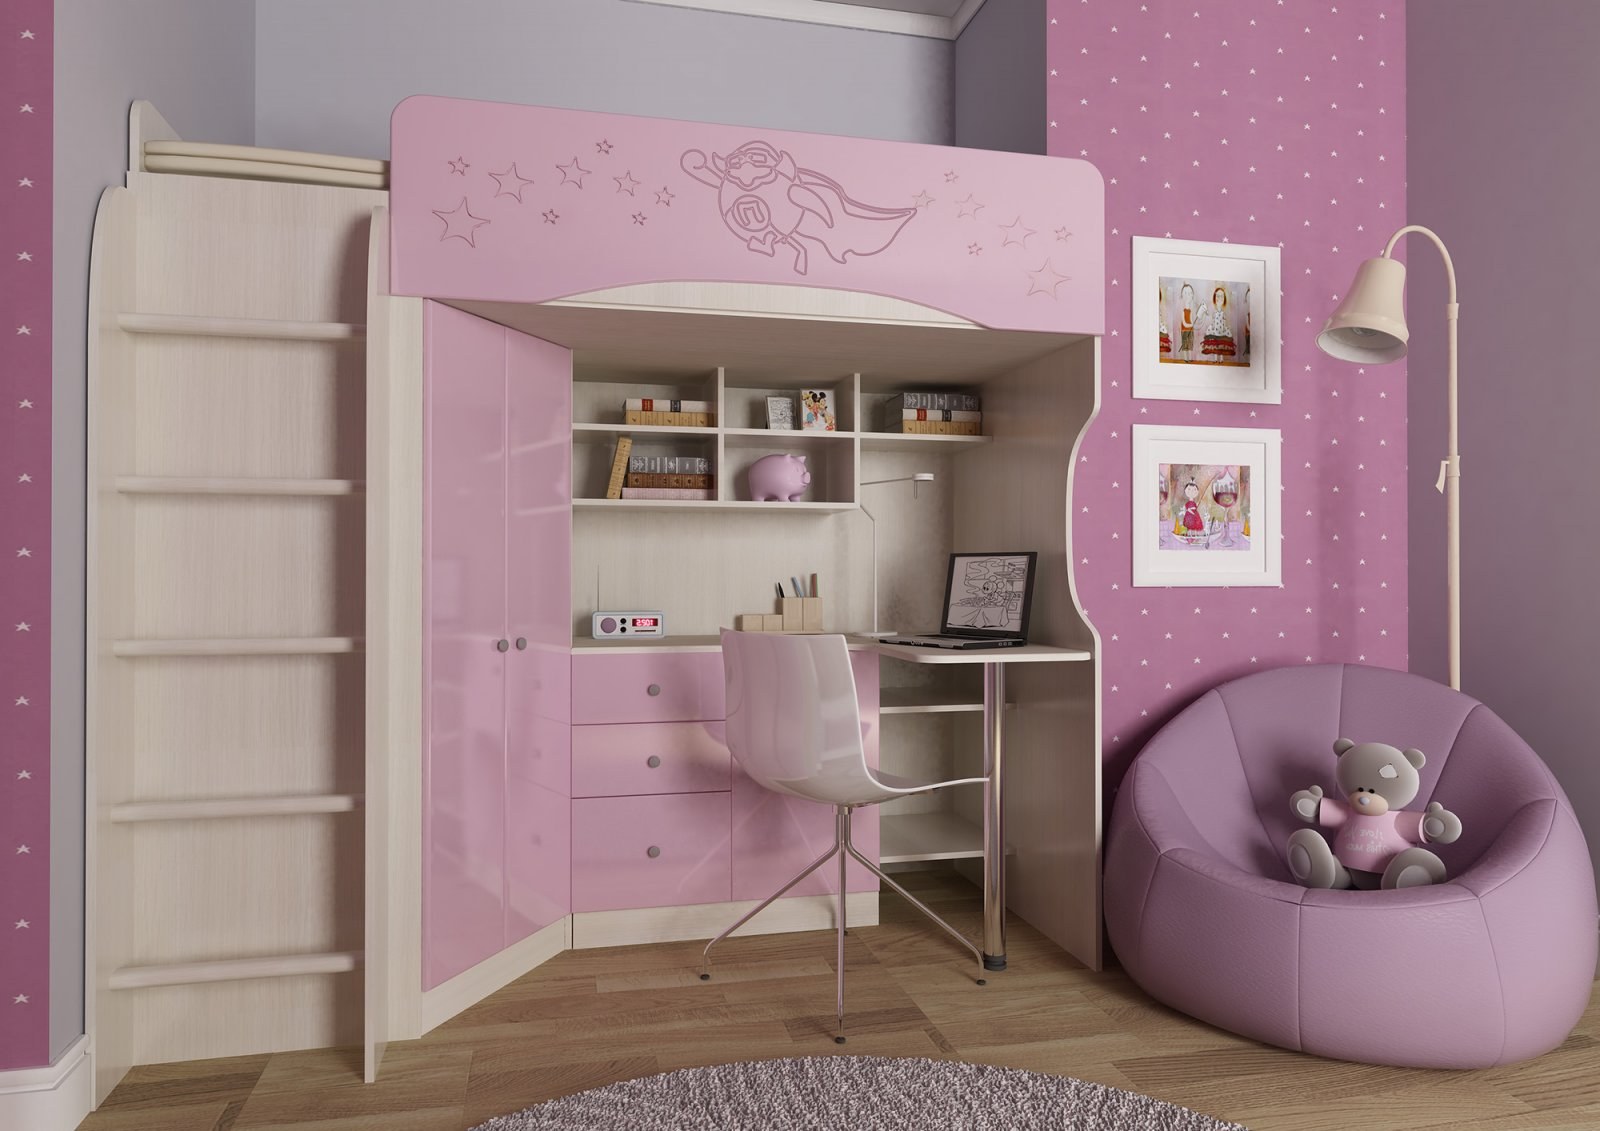 Кровати детские мебель стол. Кровать чердак Бэмби 4. Детская кровать-чердак Бэмби-3. Детская кровать Бэмби 3. Кровать чердак Бэмби 3 розовая.